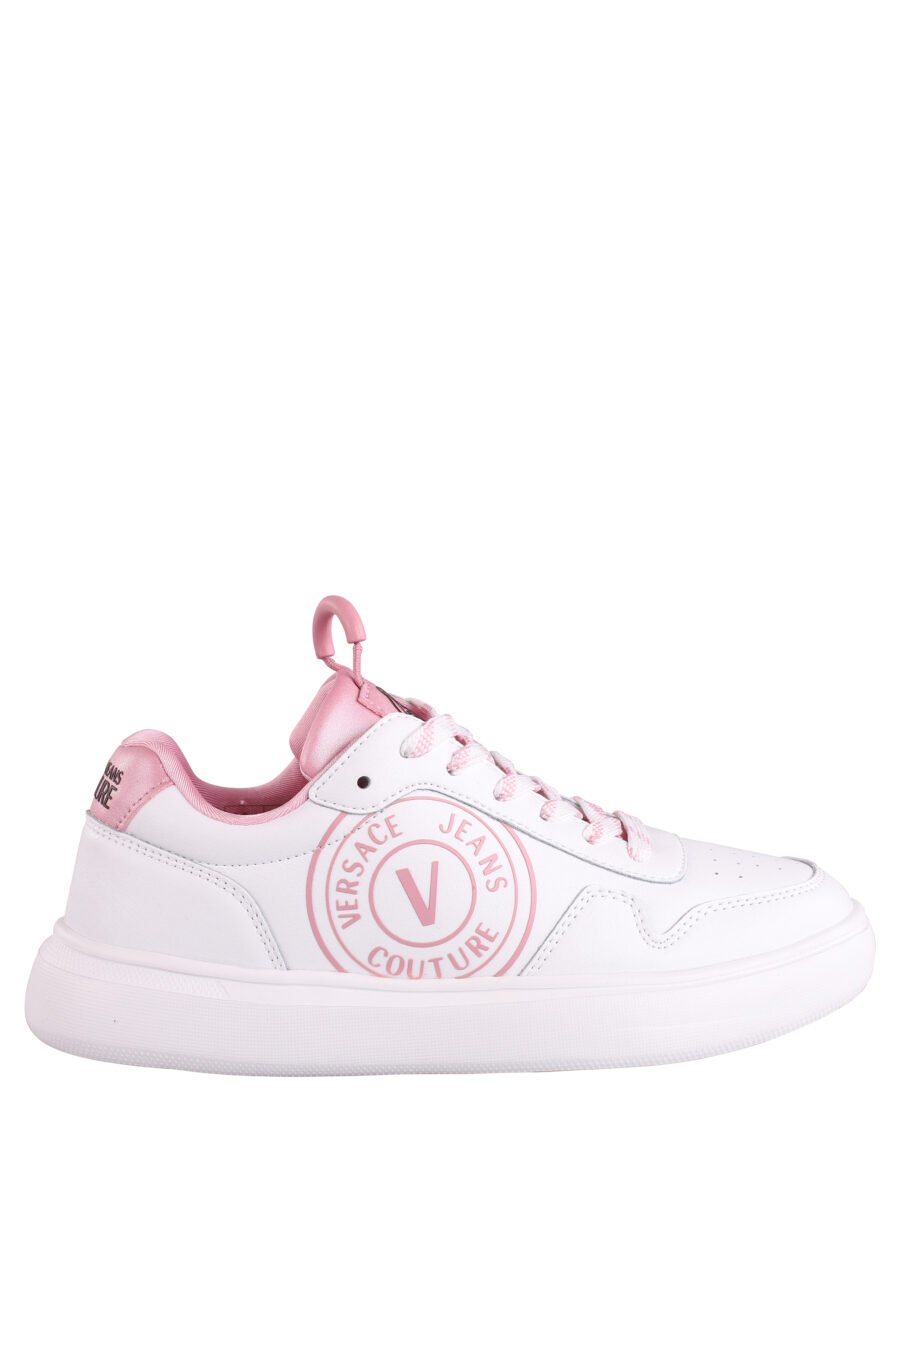 Weiße Turnschuhe mit Details und rosa Logo - IMG 9015